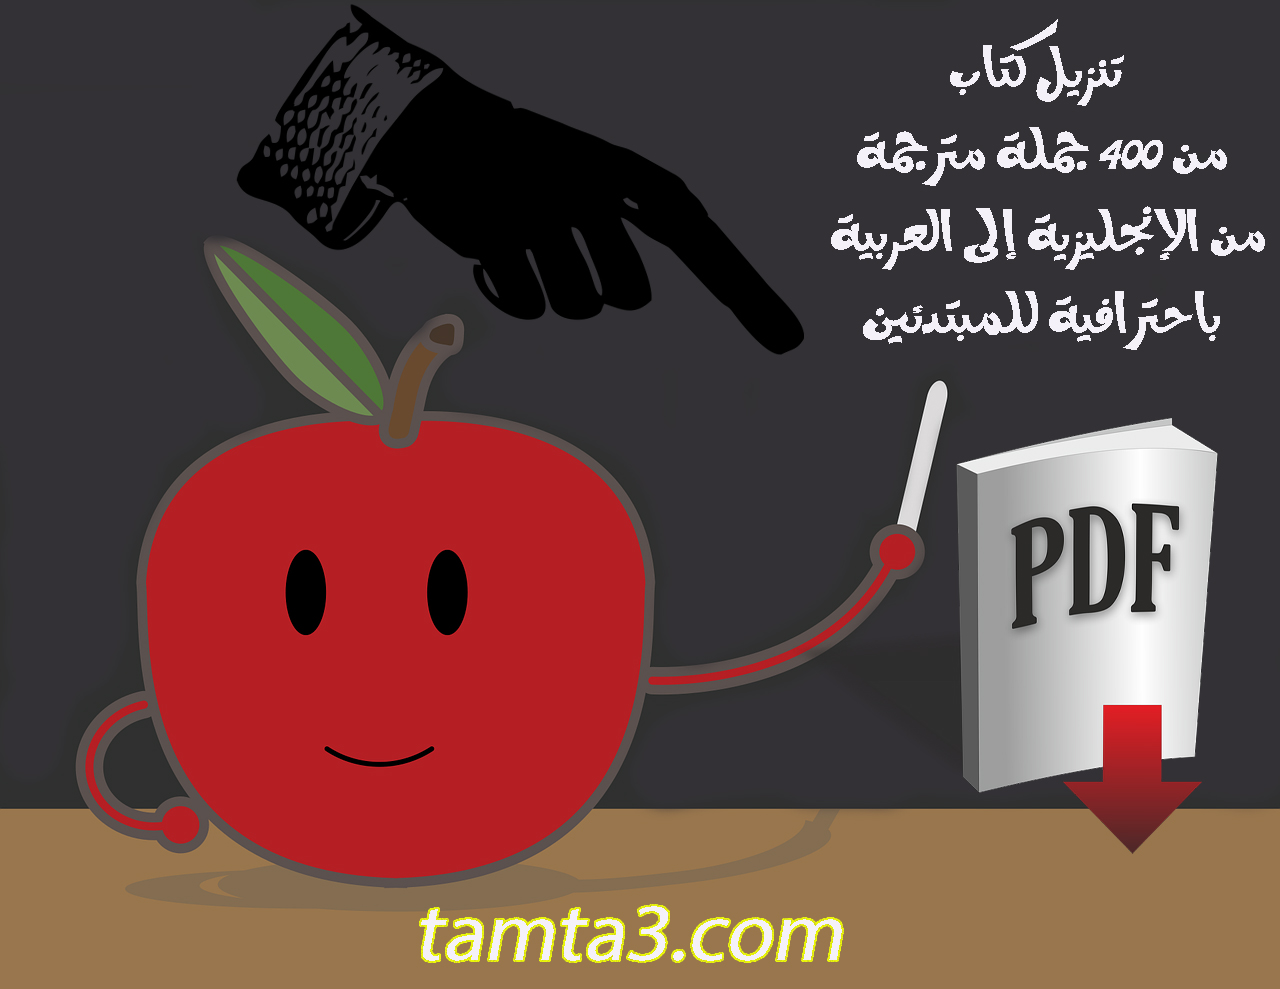 تنزيل كتاب pdf من 400 جملة مترجمة من الإنجليزية إلى العربية باحترافية للمبتدئين 